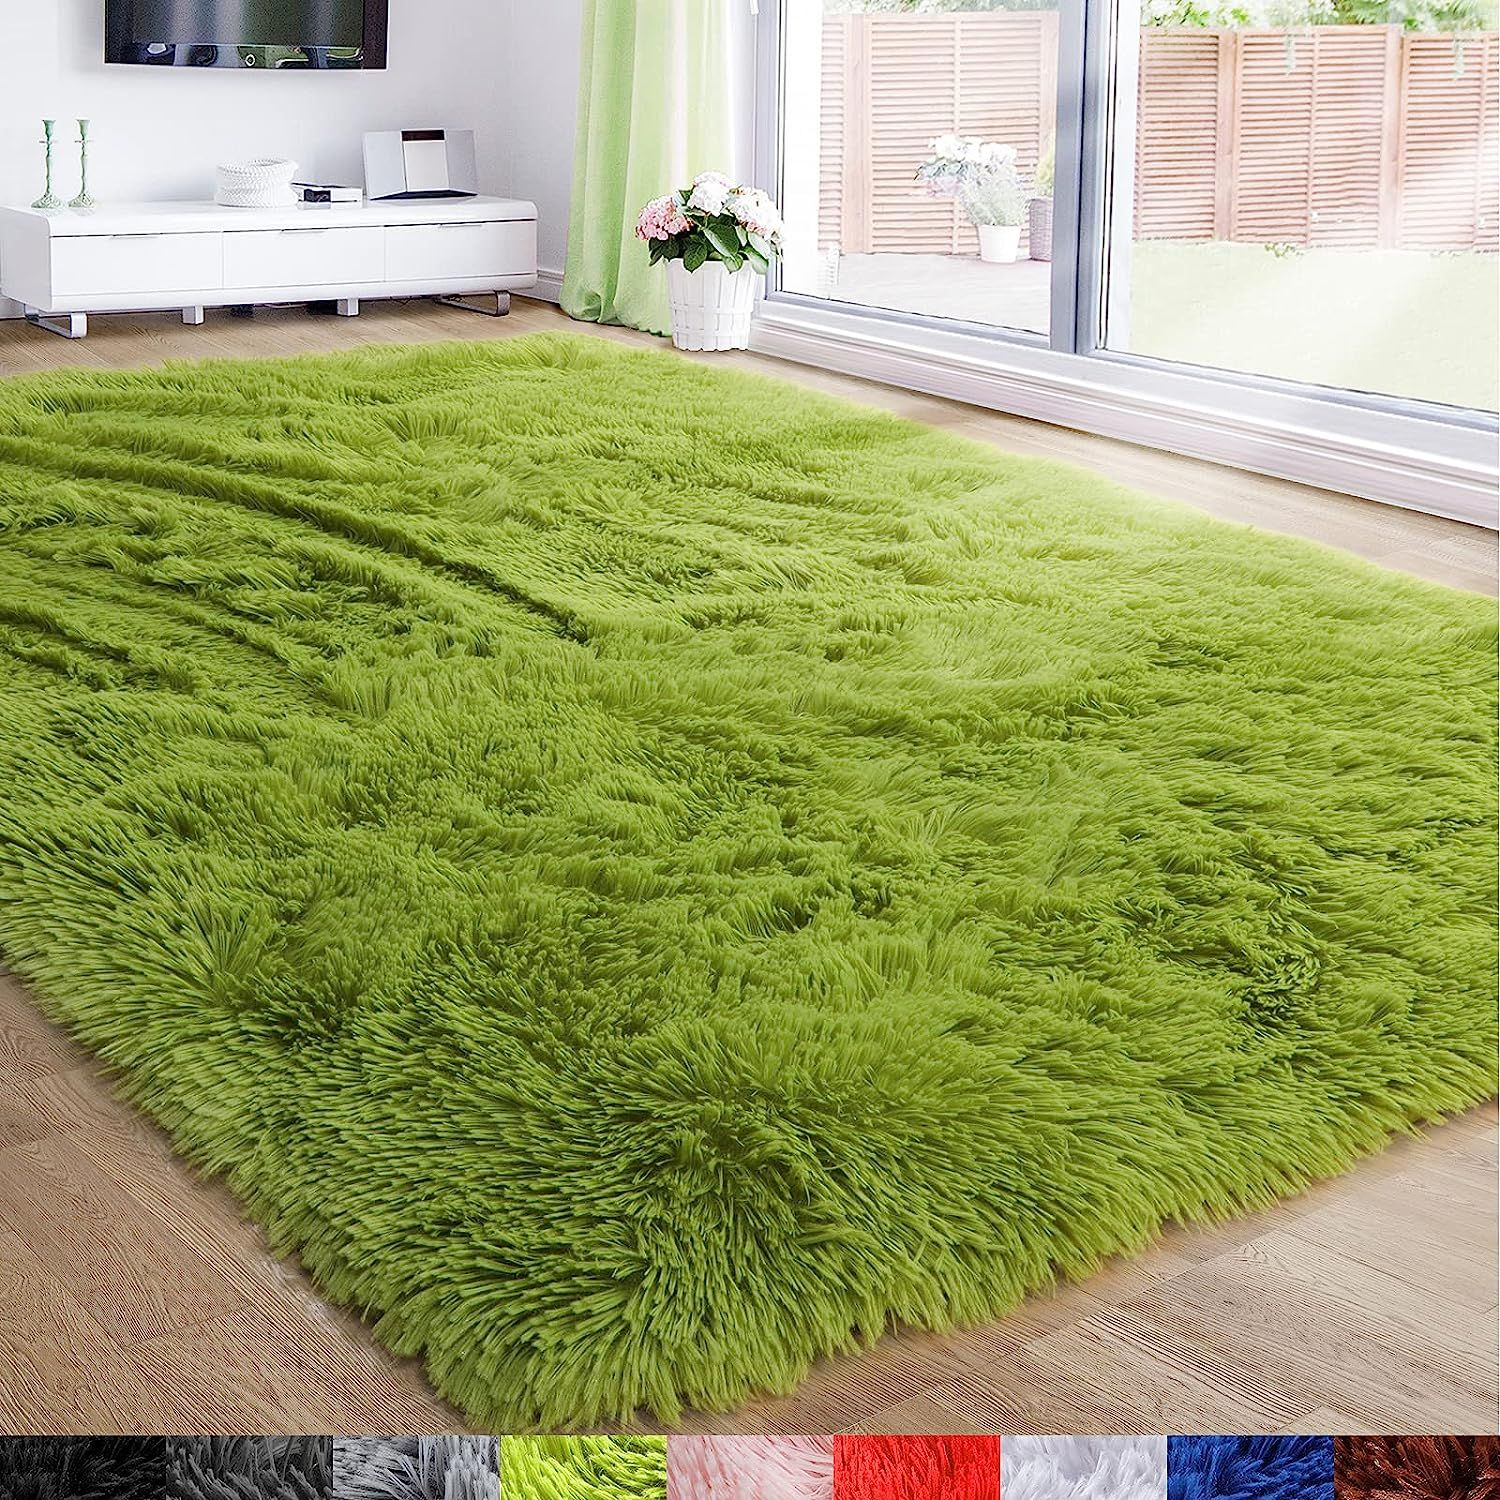 Artificial Grass Carpet Advantages